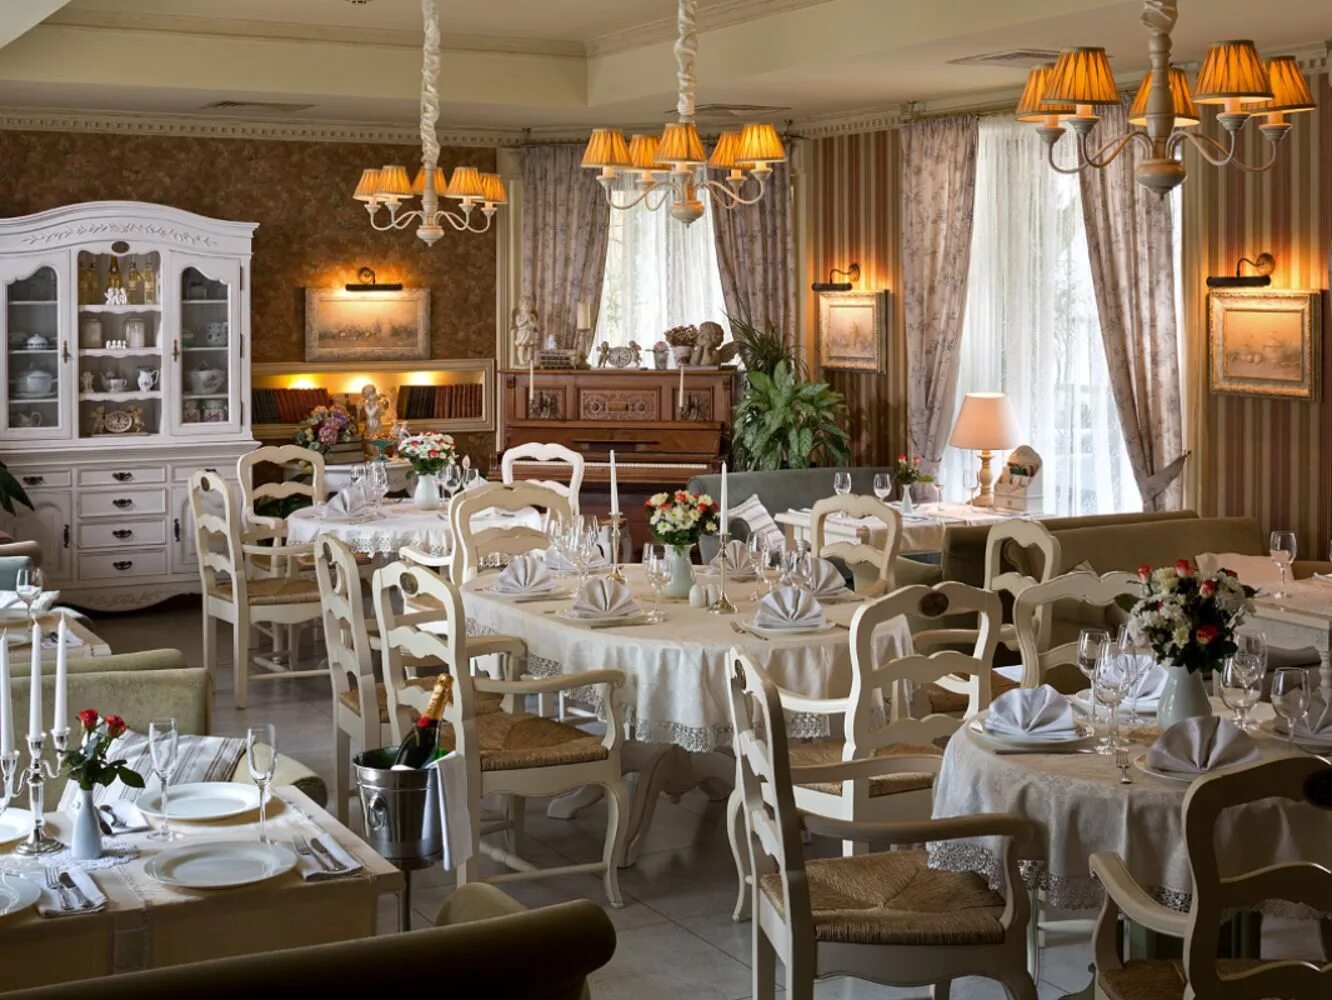 Ресторан Чехов. Ресторан Чехов Санкт-Петербург. Интерьер ресторана в дворянском стиле. Ресторан в дворянском стиле.